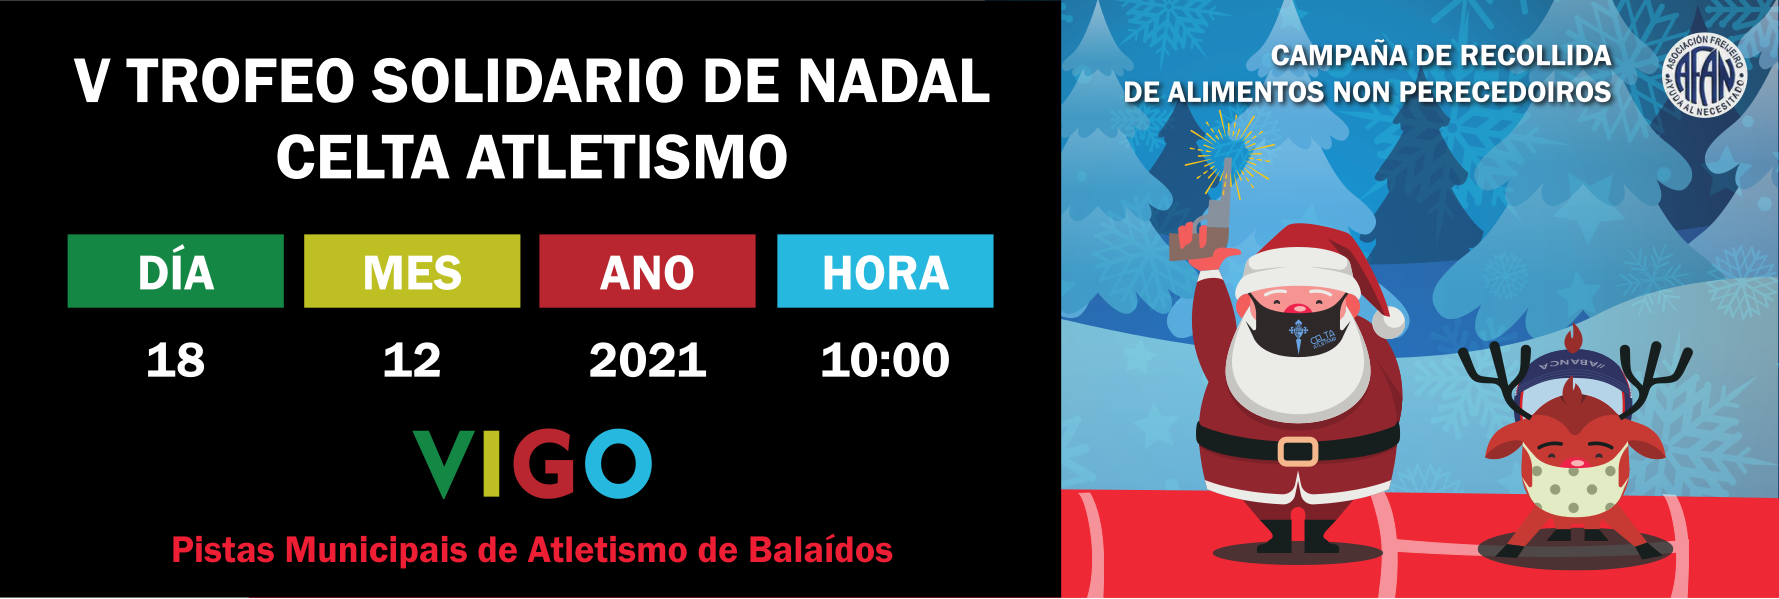  5º Trofeo solidario de Nadal Celta atletismo.  Vigo, 18 decembro 2021